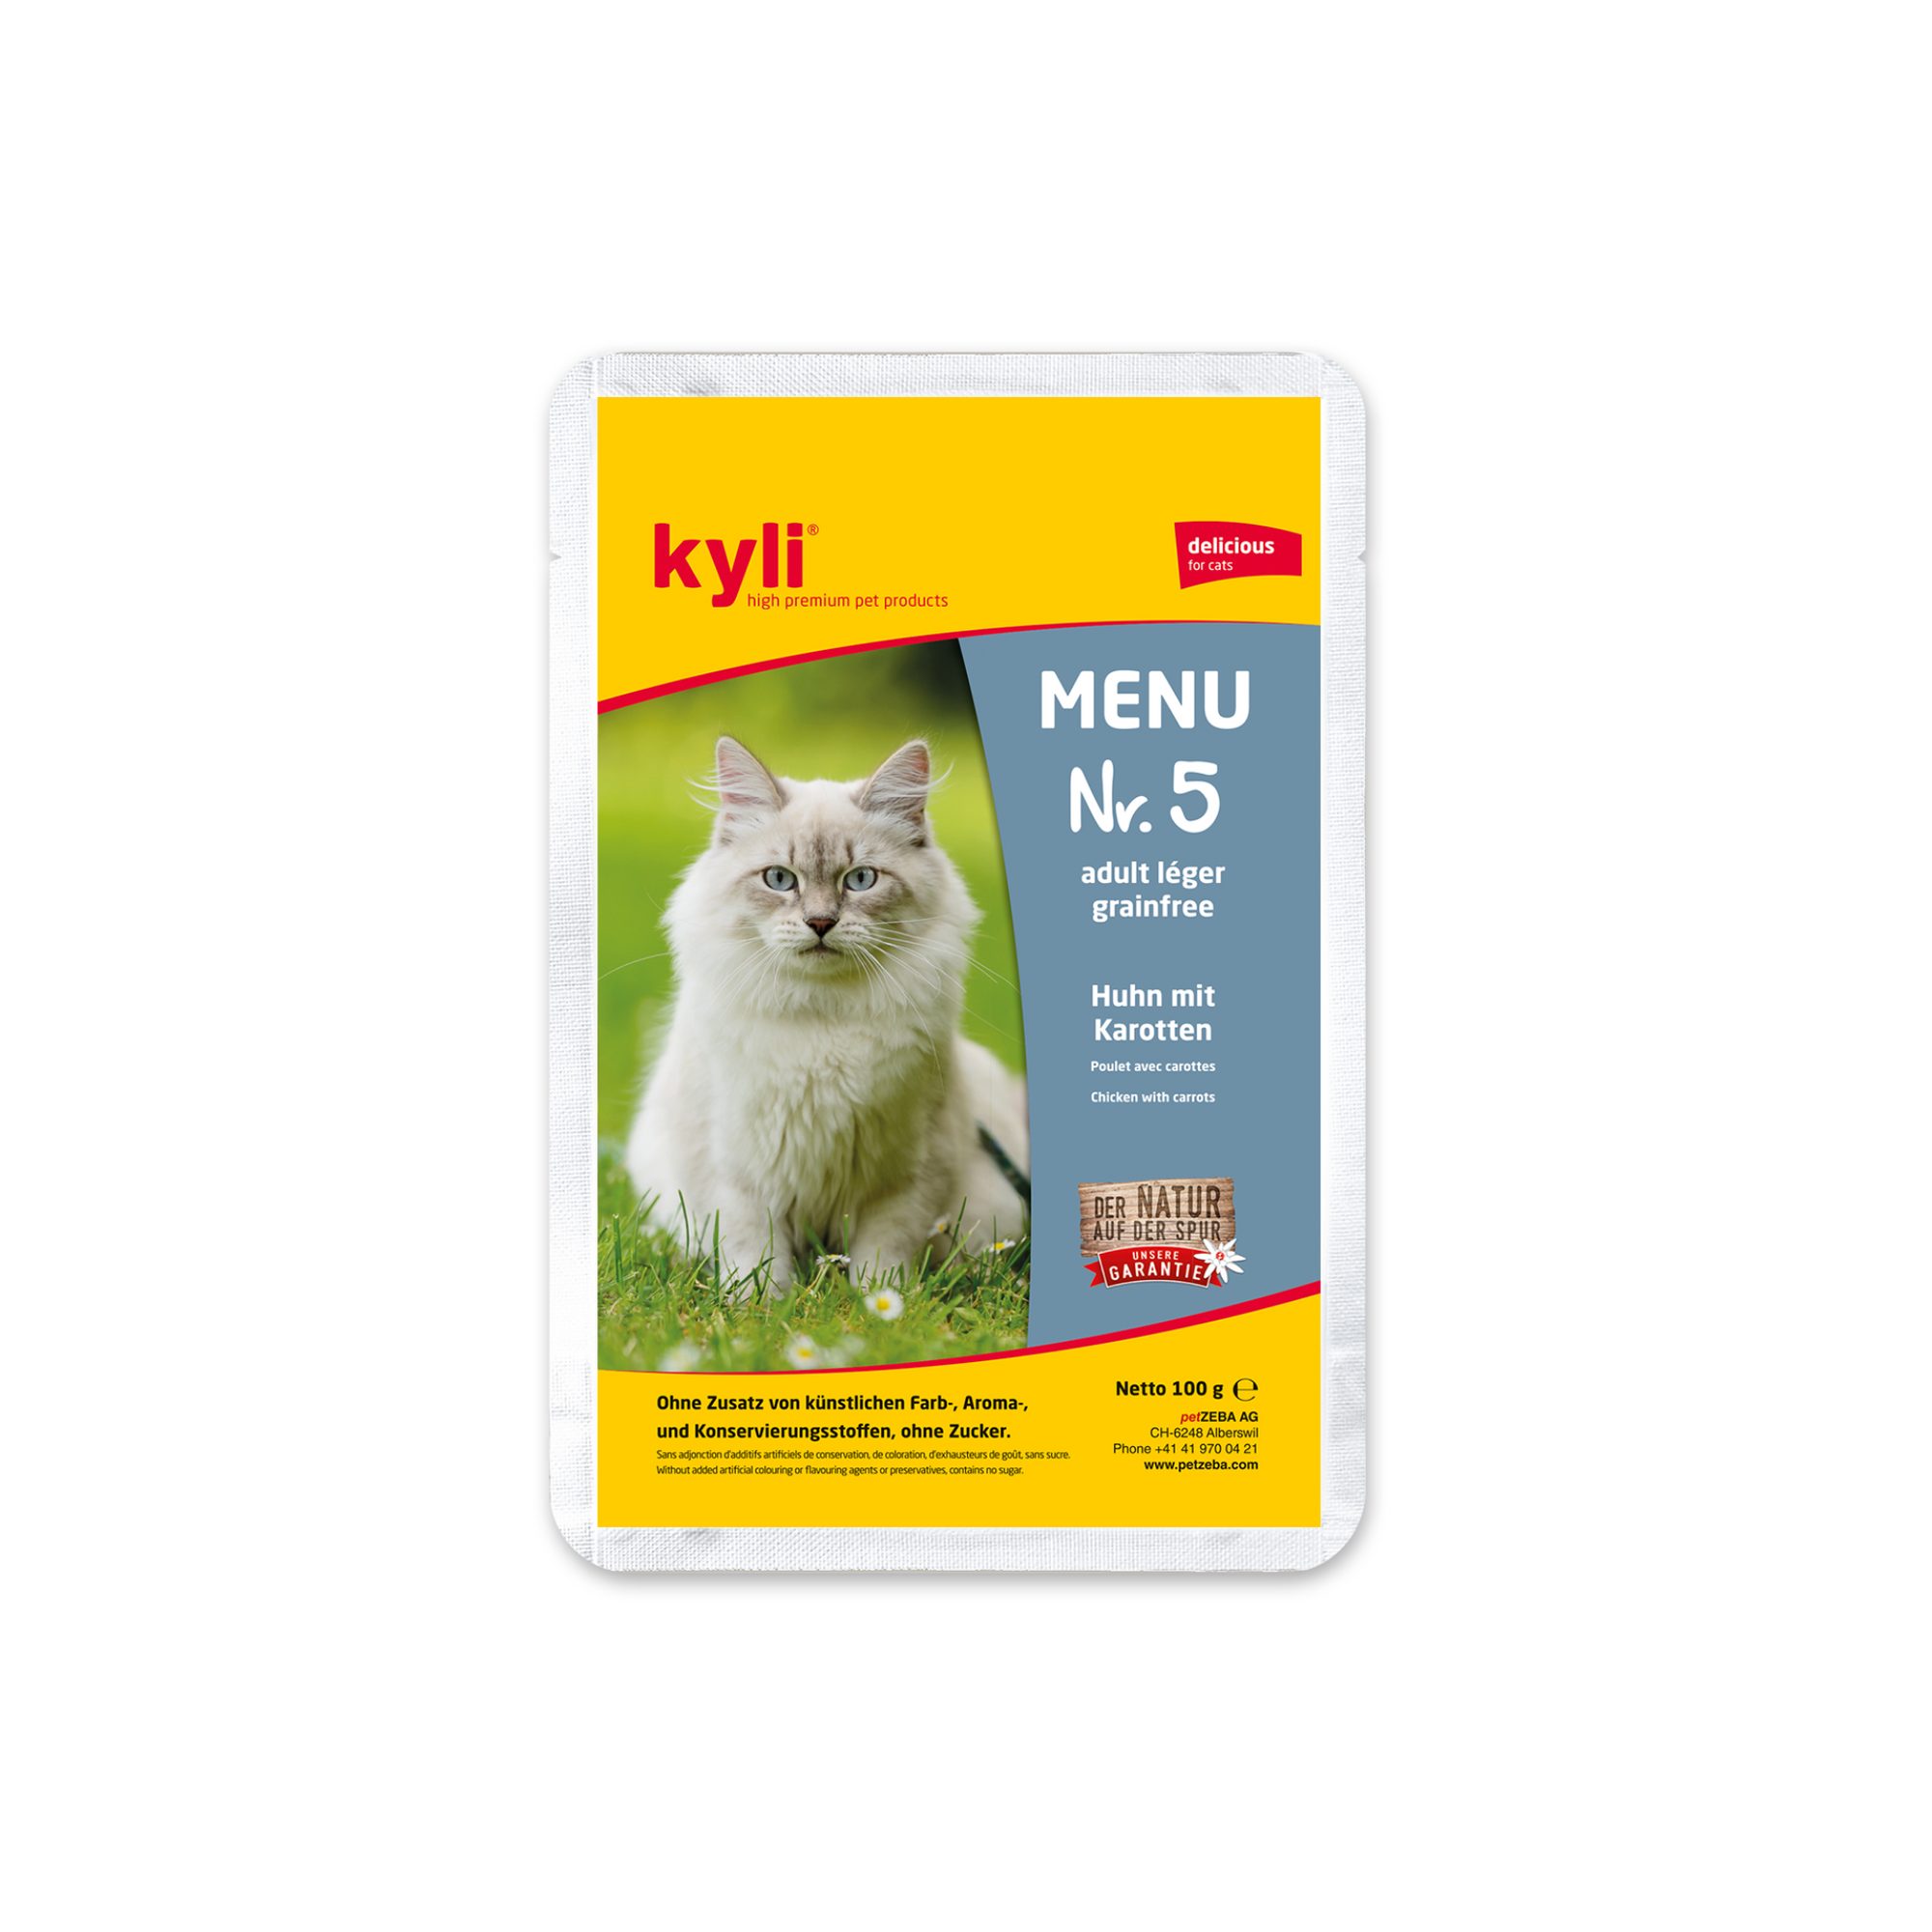 Artikel mit dem Namen Kyli Menu Nr. 5 léger im Shop von zoo.de , dem Onlineshop für nachhaltiges Hundefutter und Katzenfutter.